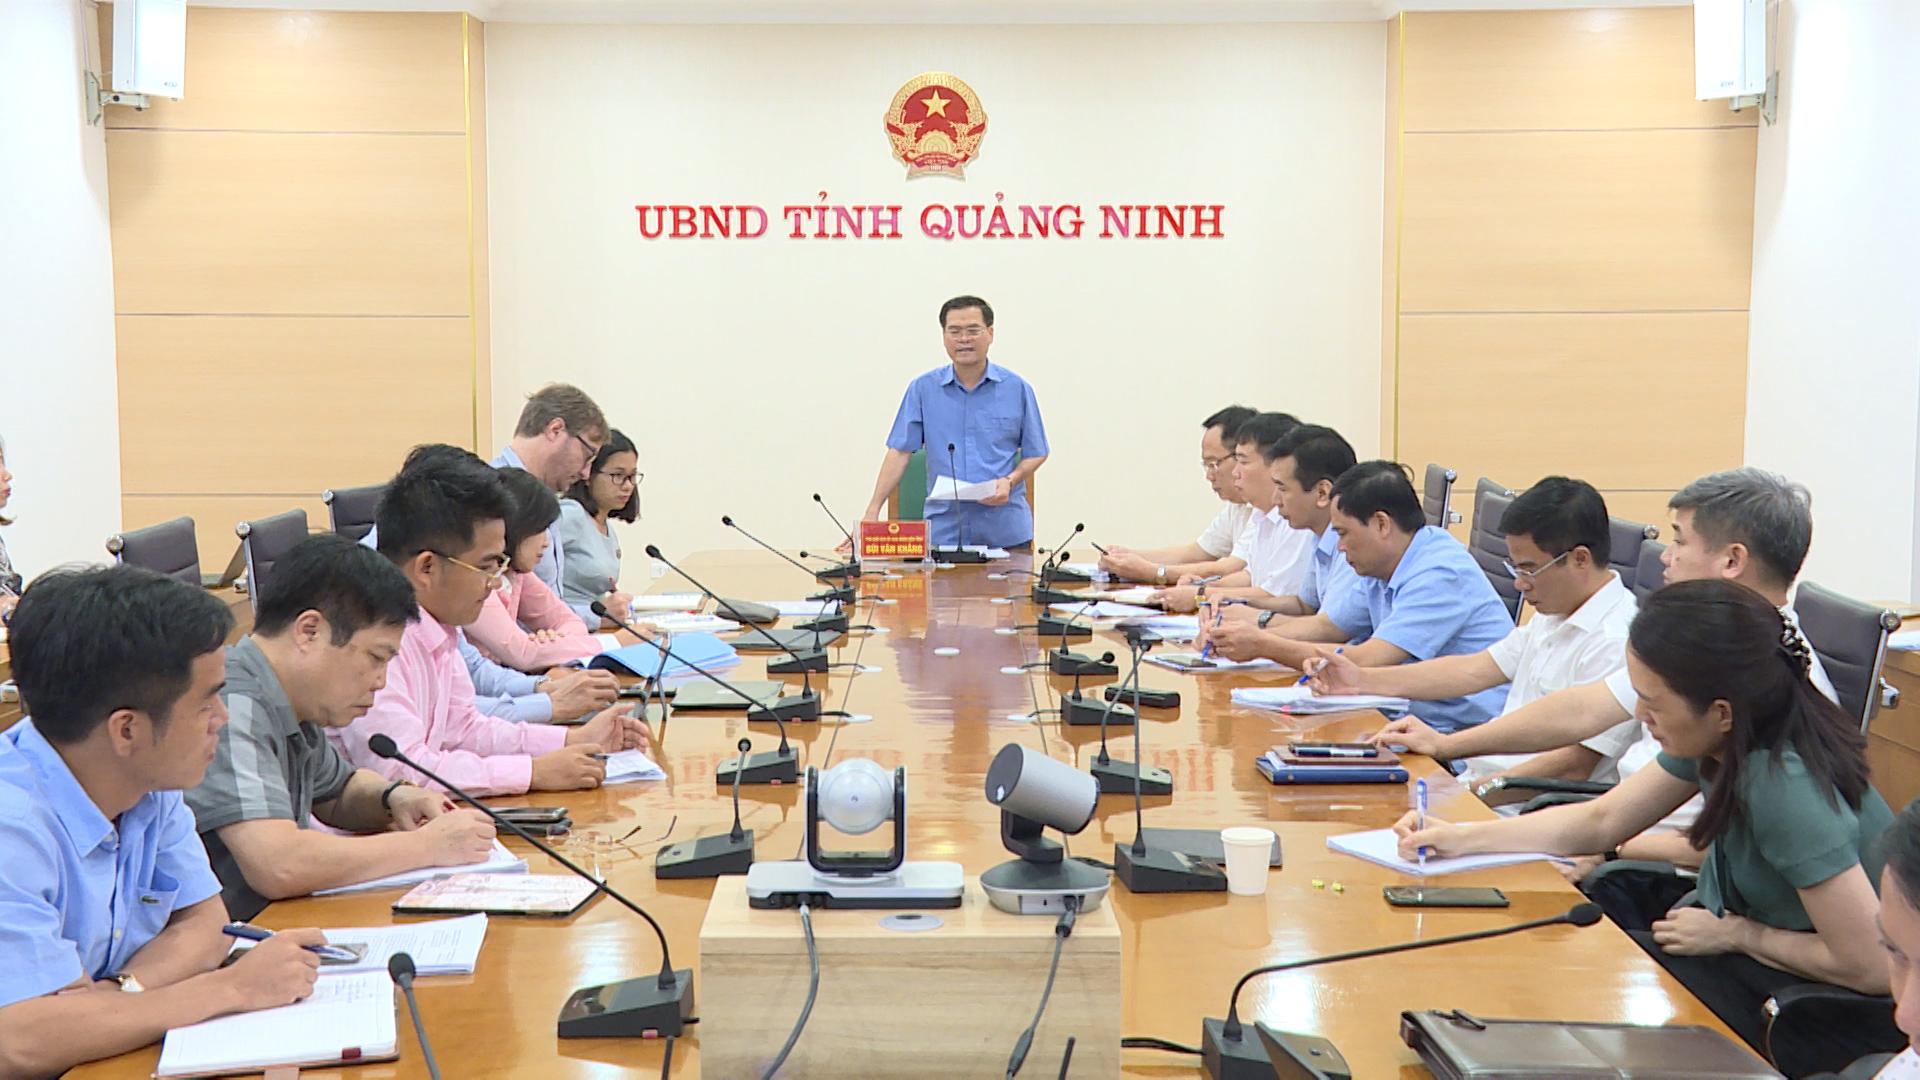 Phó Chủ tịch UBND tỉnh Bùi Văn Khắng chủ trì và kết luận cuộc họp.